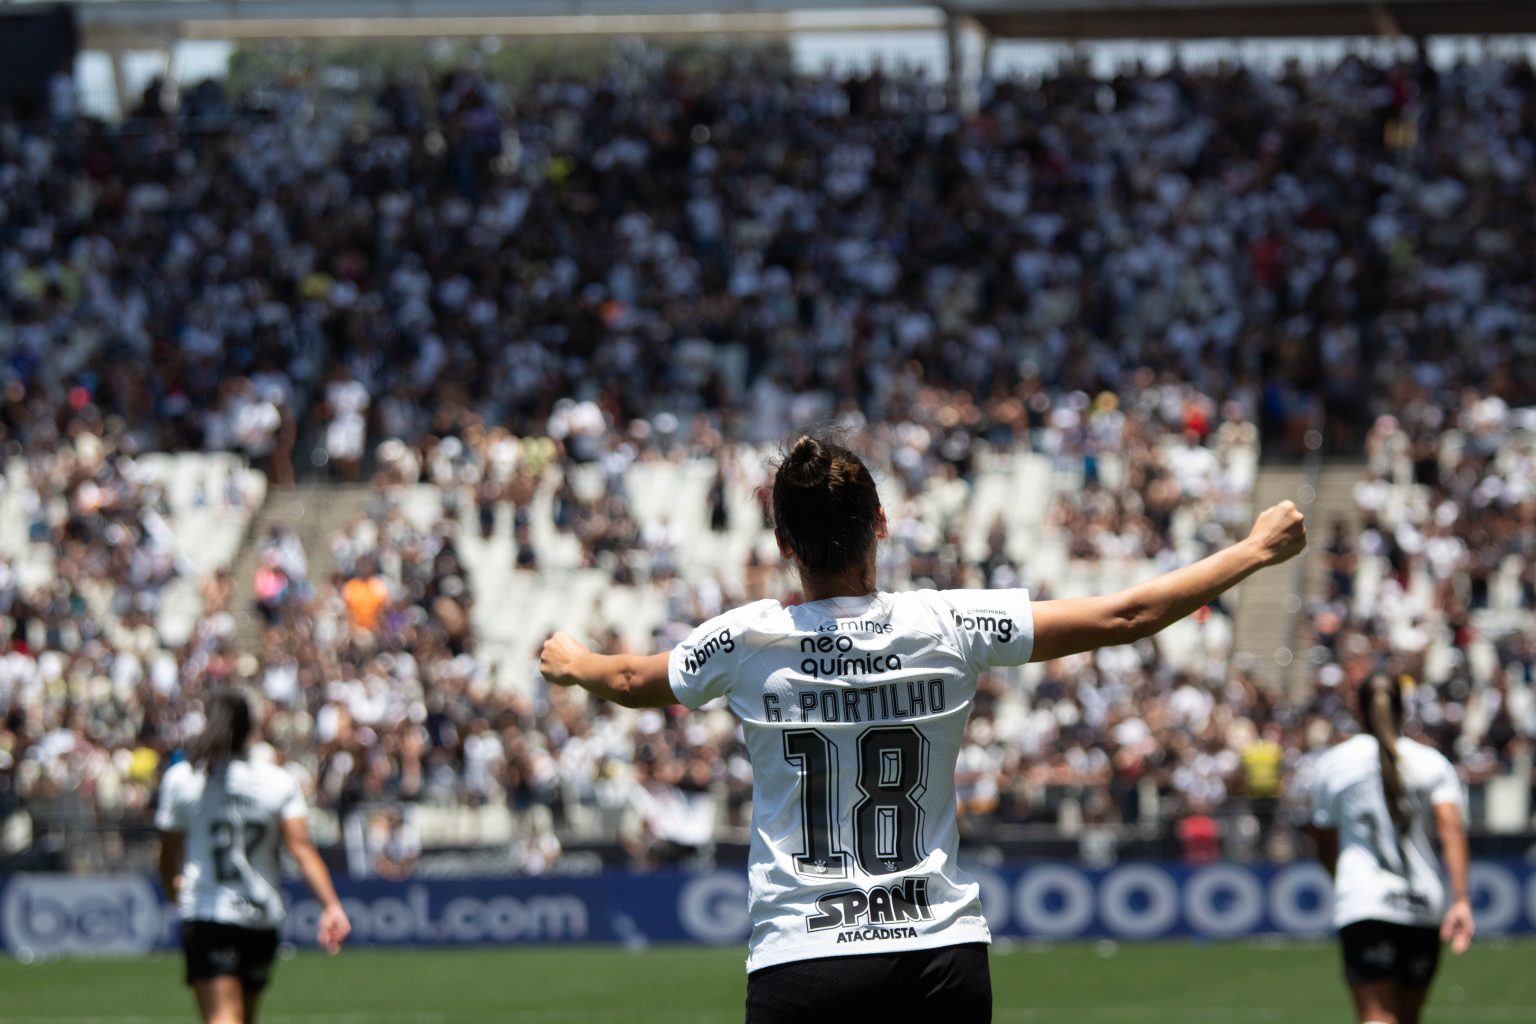 Botafogo empata com o Santos e completa oitavo jogo seguido sem vencer - O  Progresso